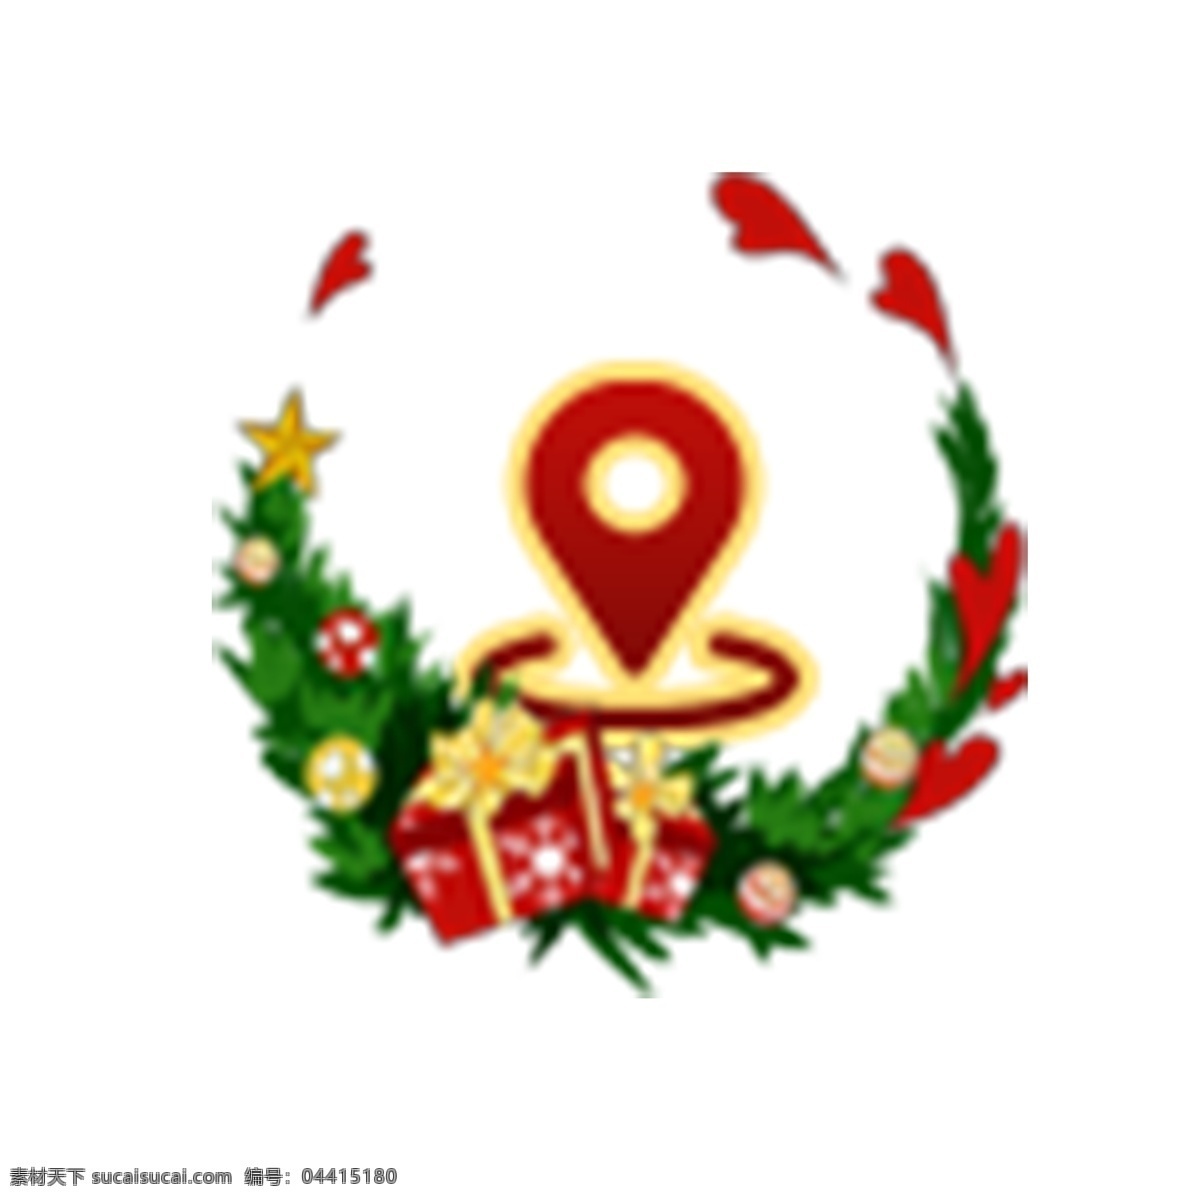 导航图标 位置 坐标 圣诞图标 扁平化ui ui图标 手机图标 界面ui 网页ui h5图标